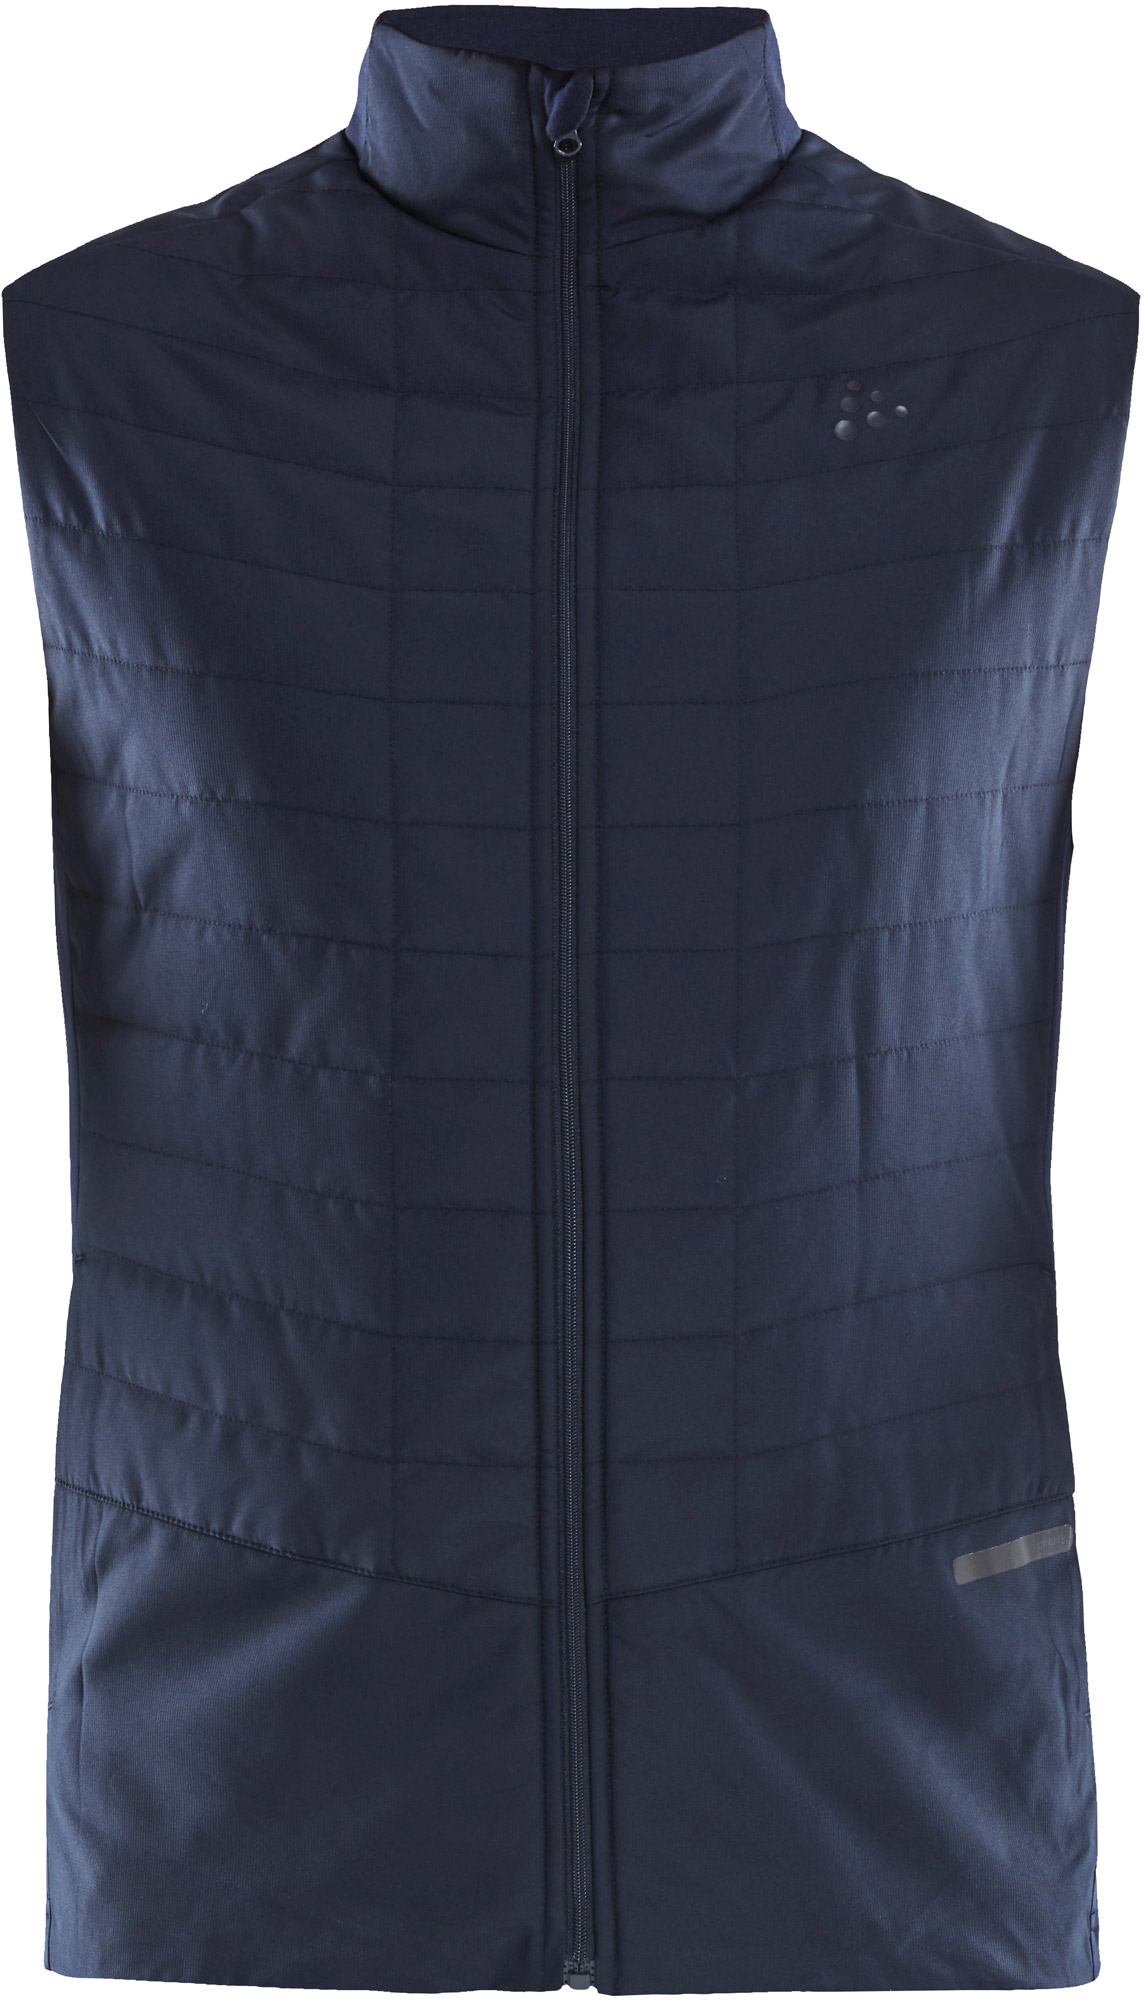 Men's wind resistant vest